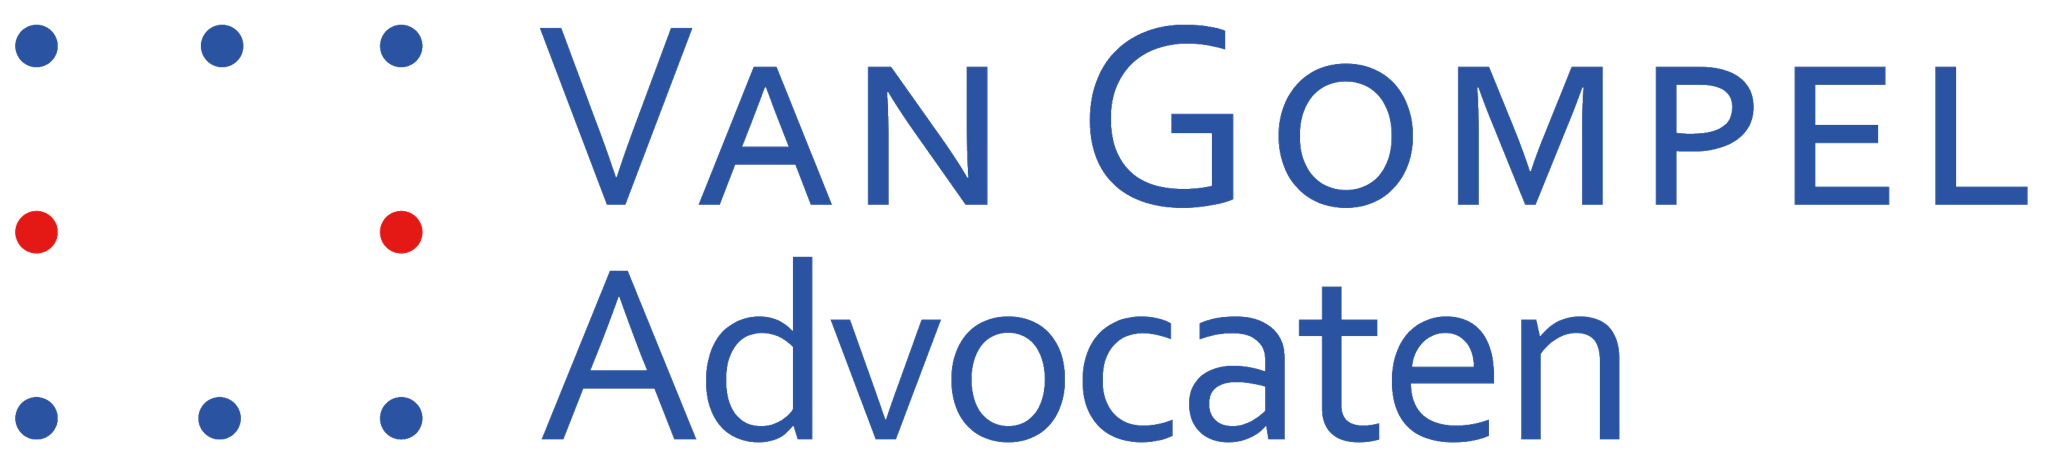 Van Gompel Advocaten logo